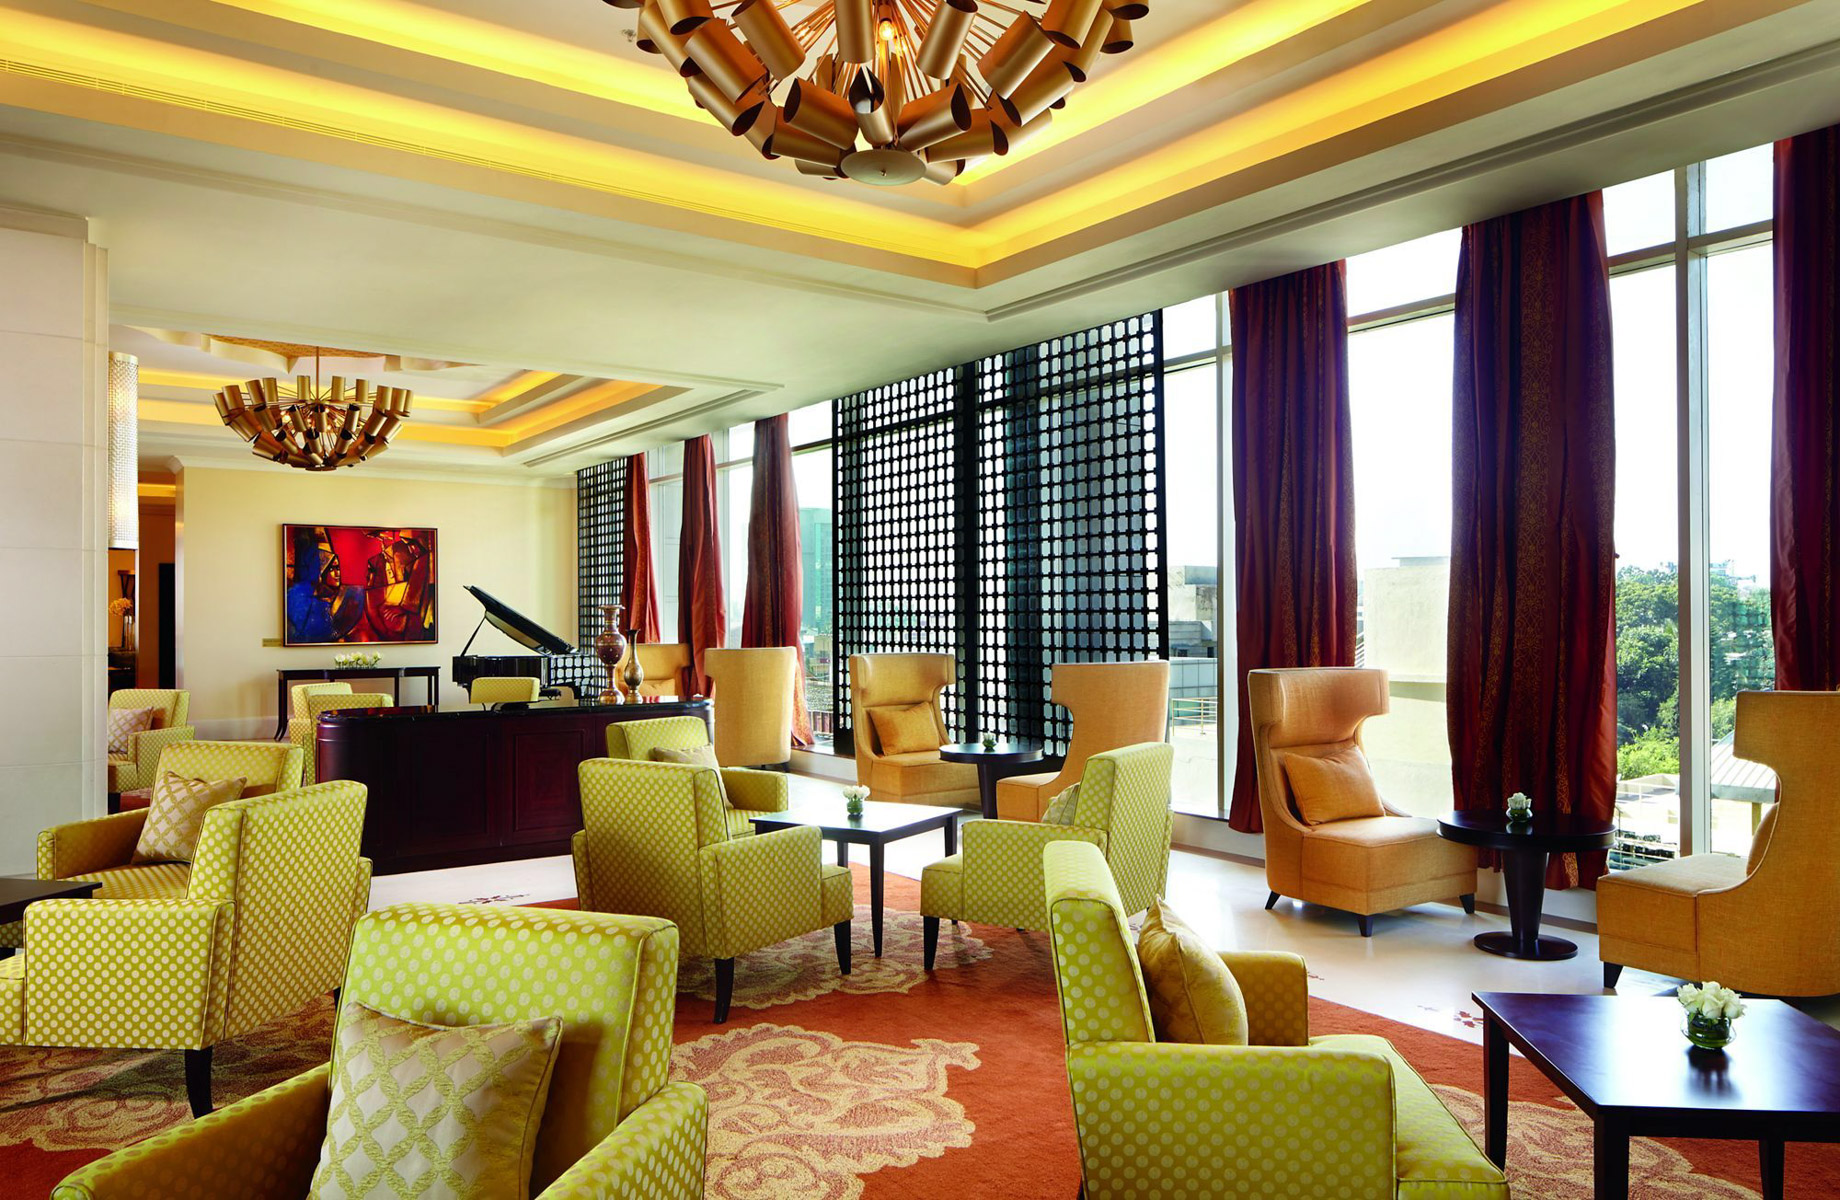 The Ritz-Carlton, Bangalore Hotel - Bangalore, Karnataka, India - Lobby Lounge